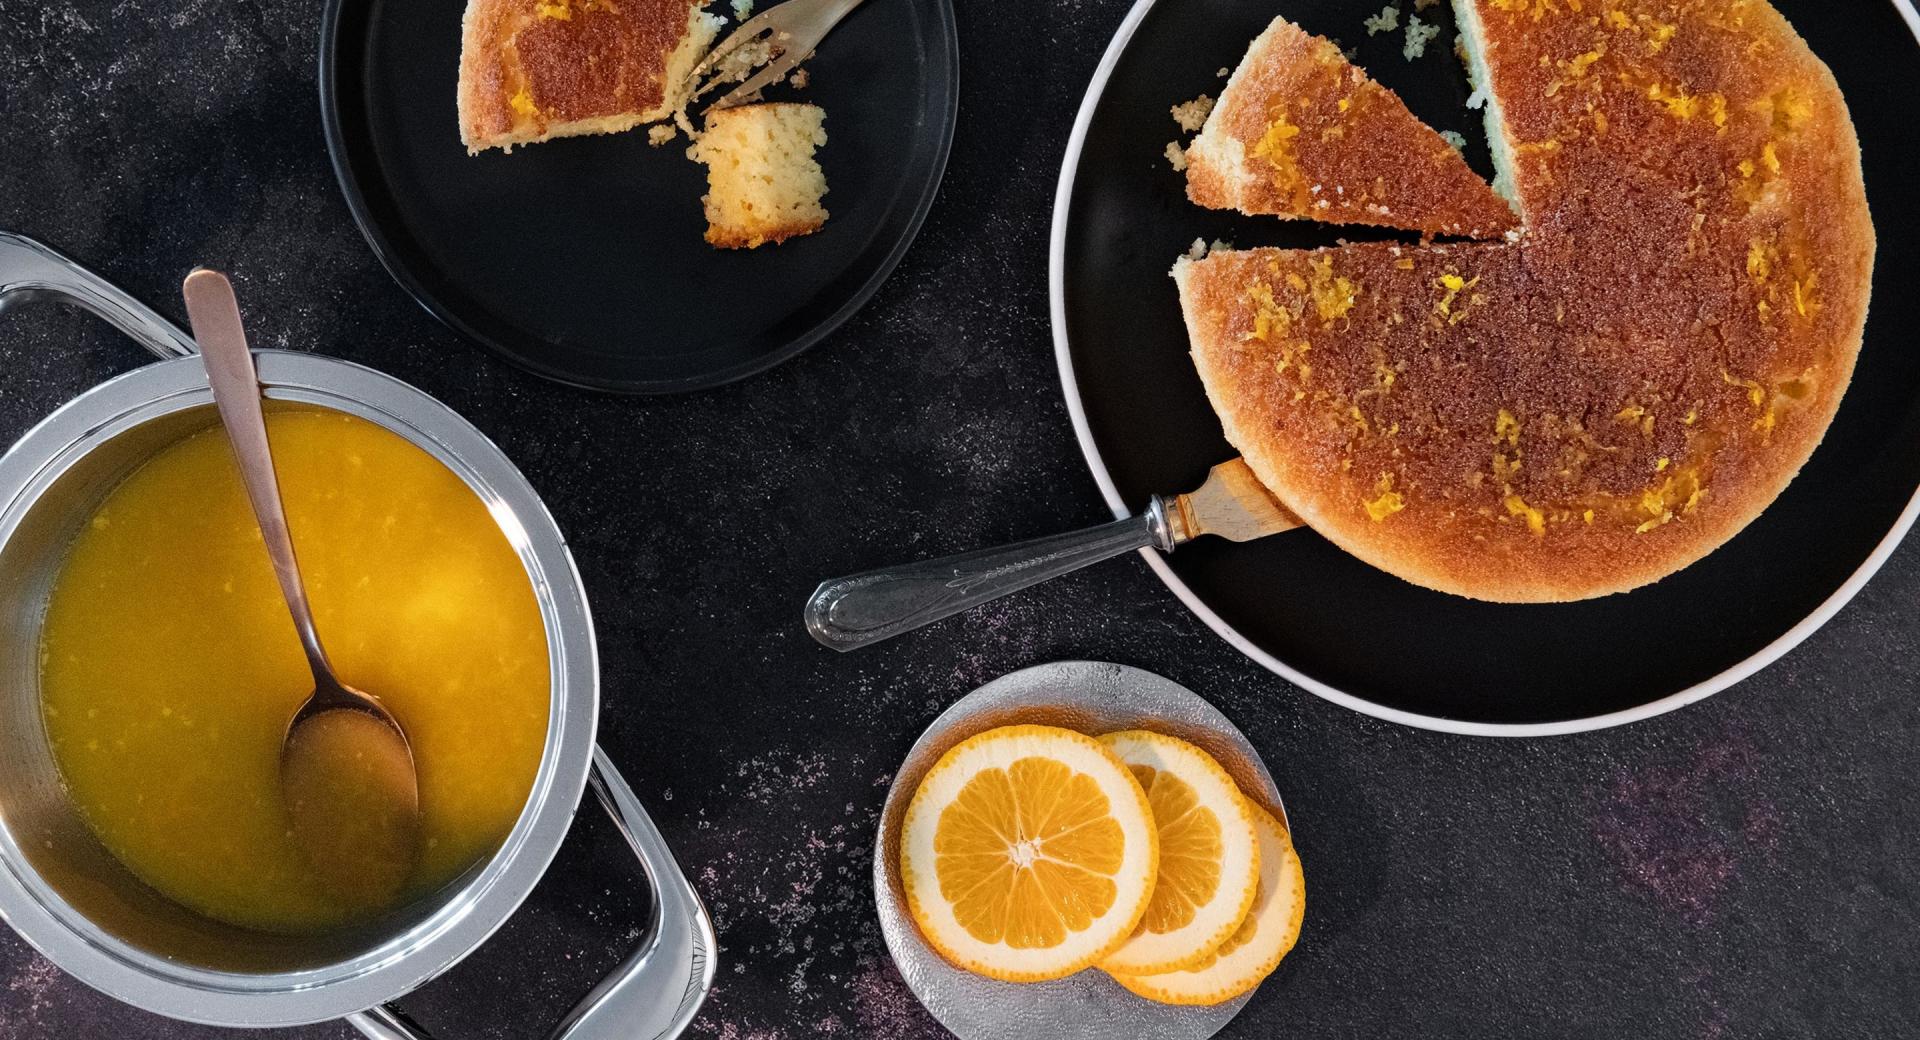 Torta all’arancia (portakal tatlisi)